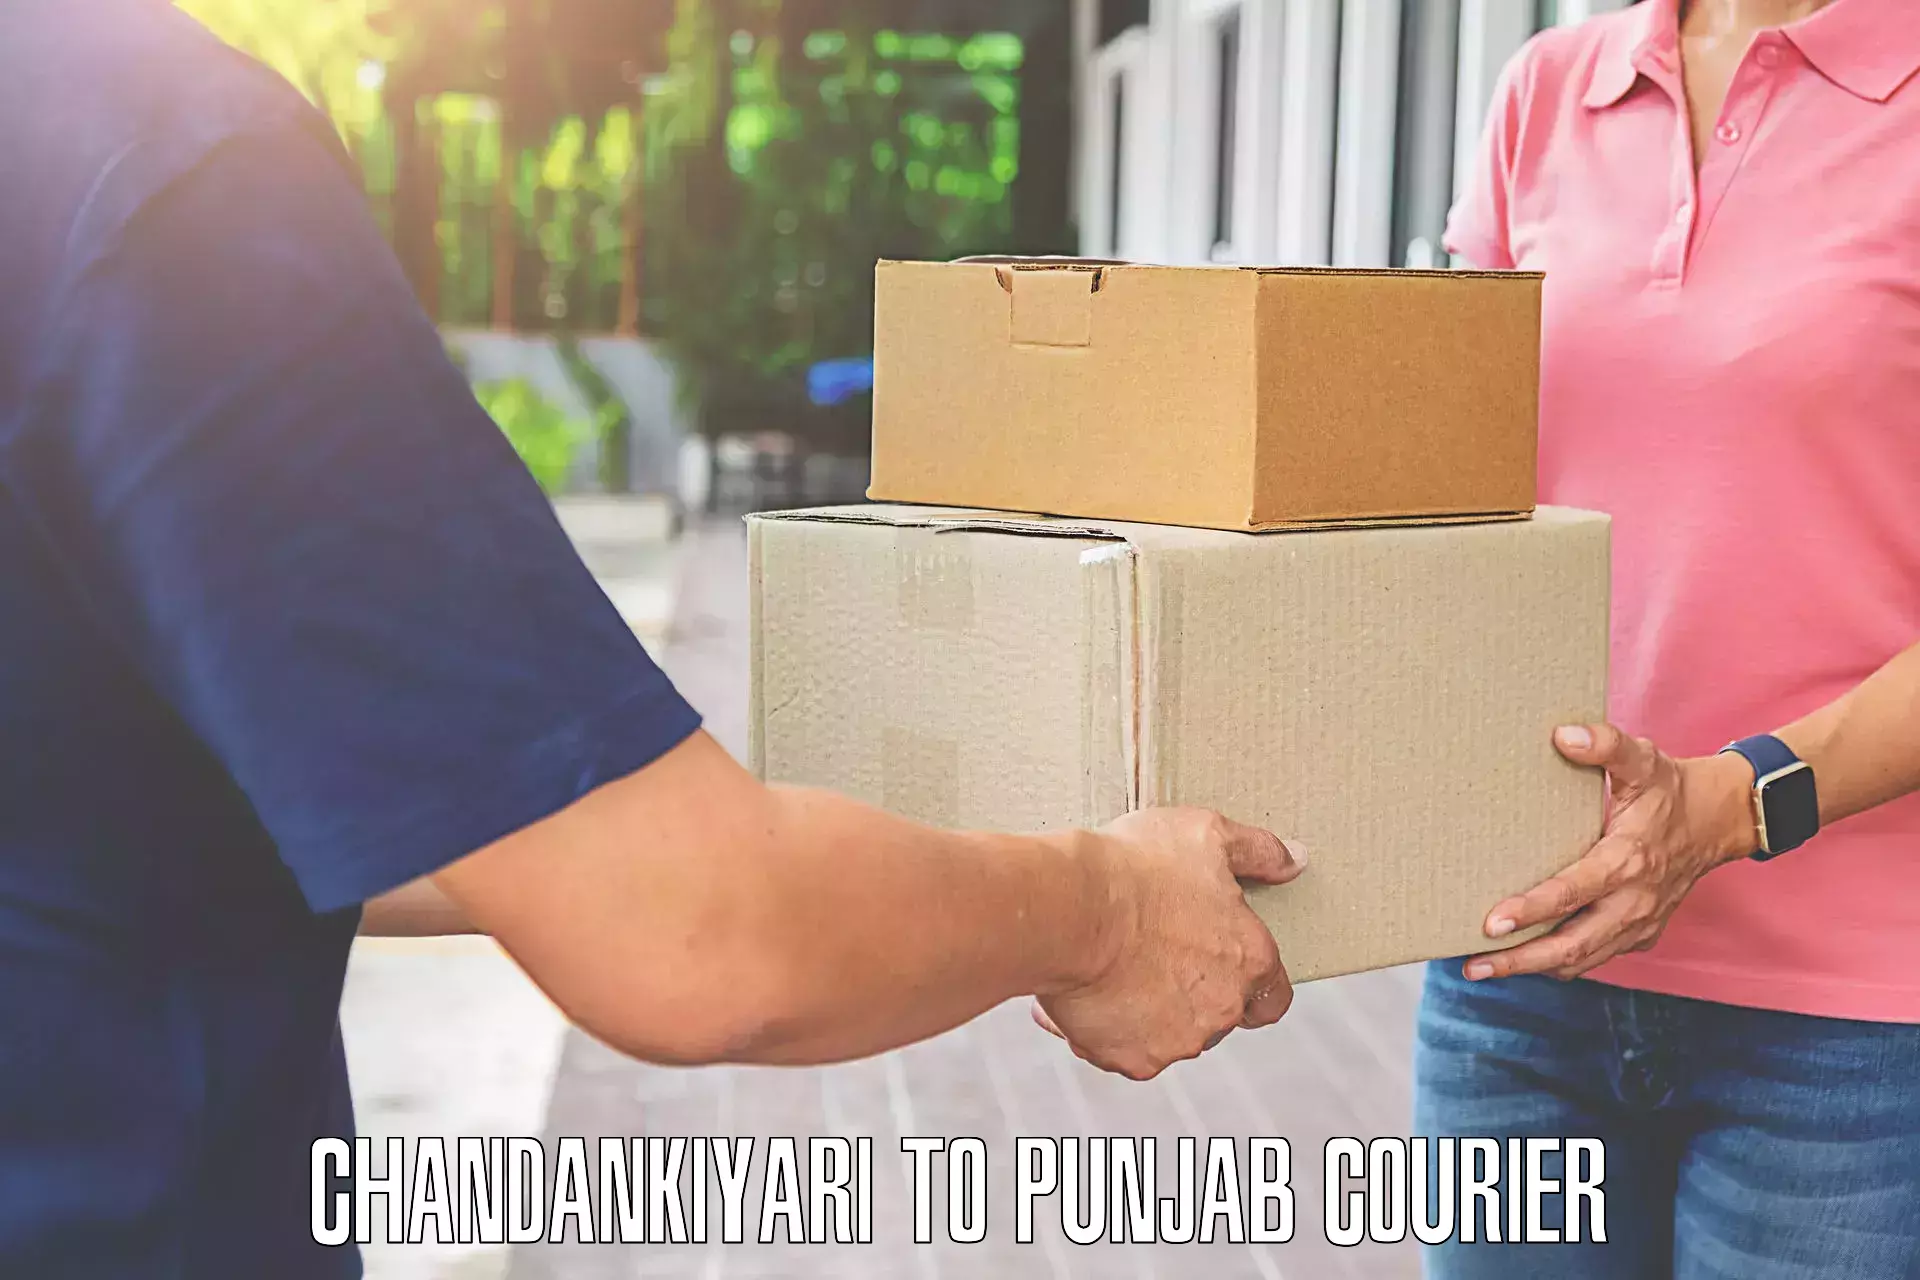 Premium luggage delivery Chandankiyari to Patran